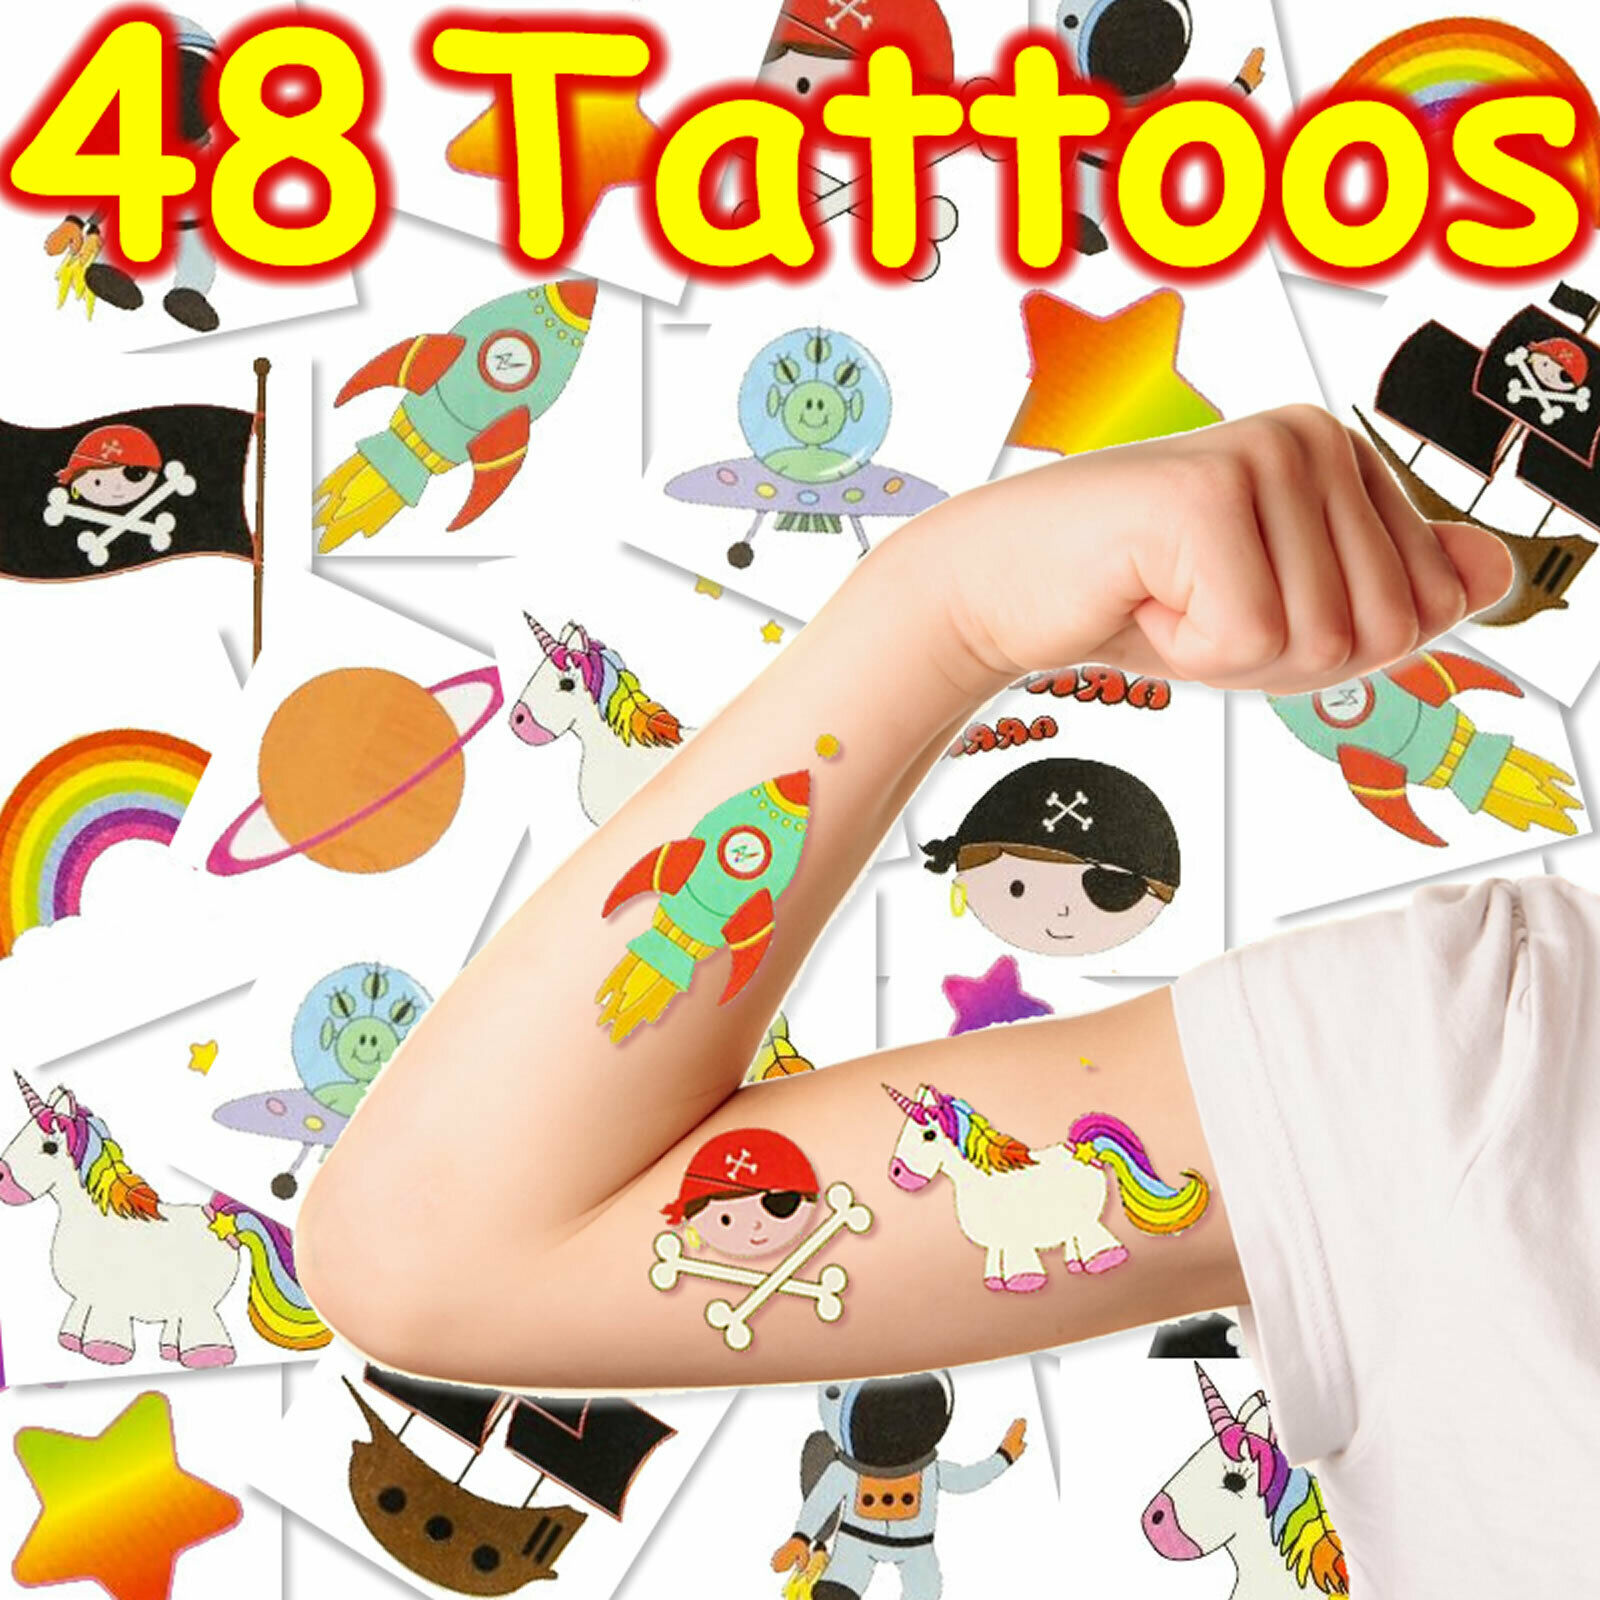 Xxl Kinder Tattoo Set - 48 Tattoos Kindergeburtstag Kindertattoos Mitgebsel